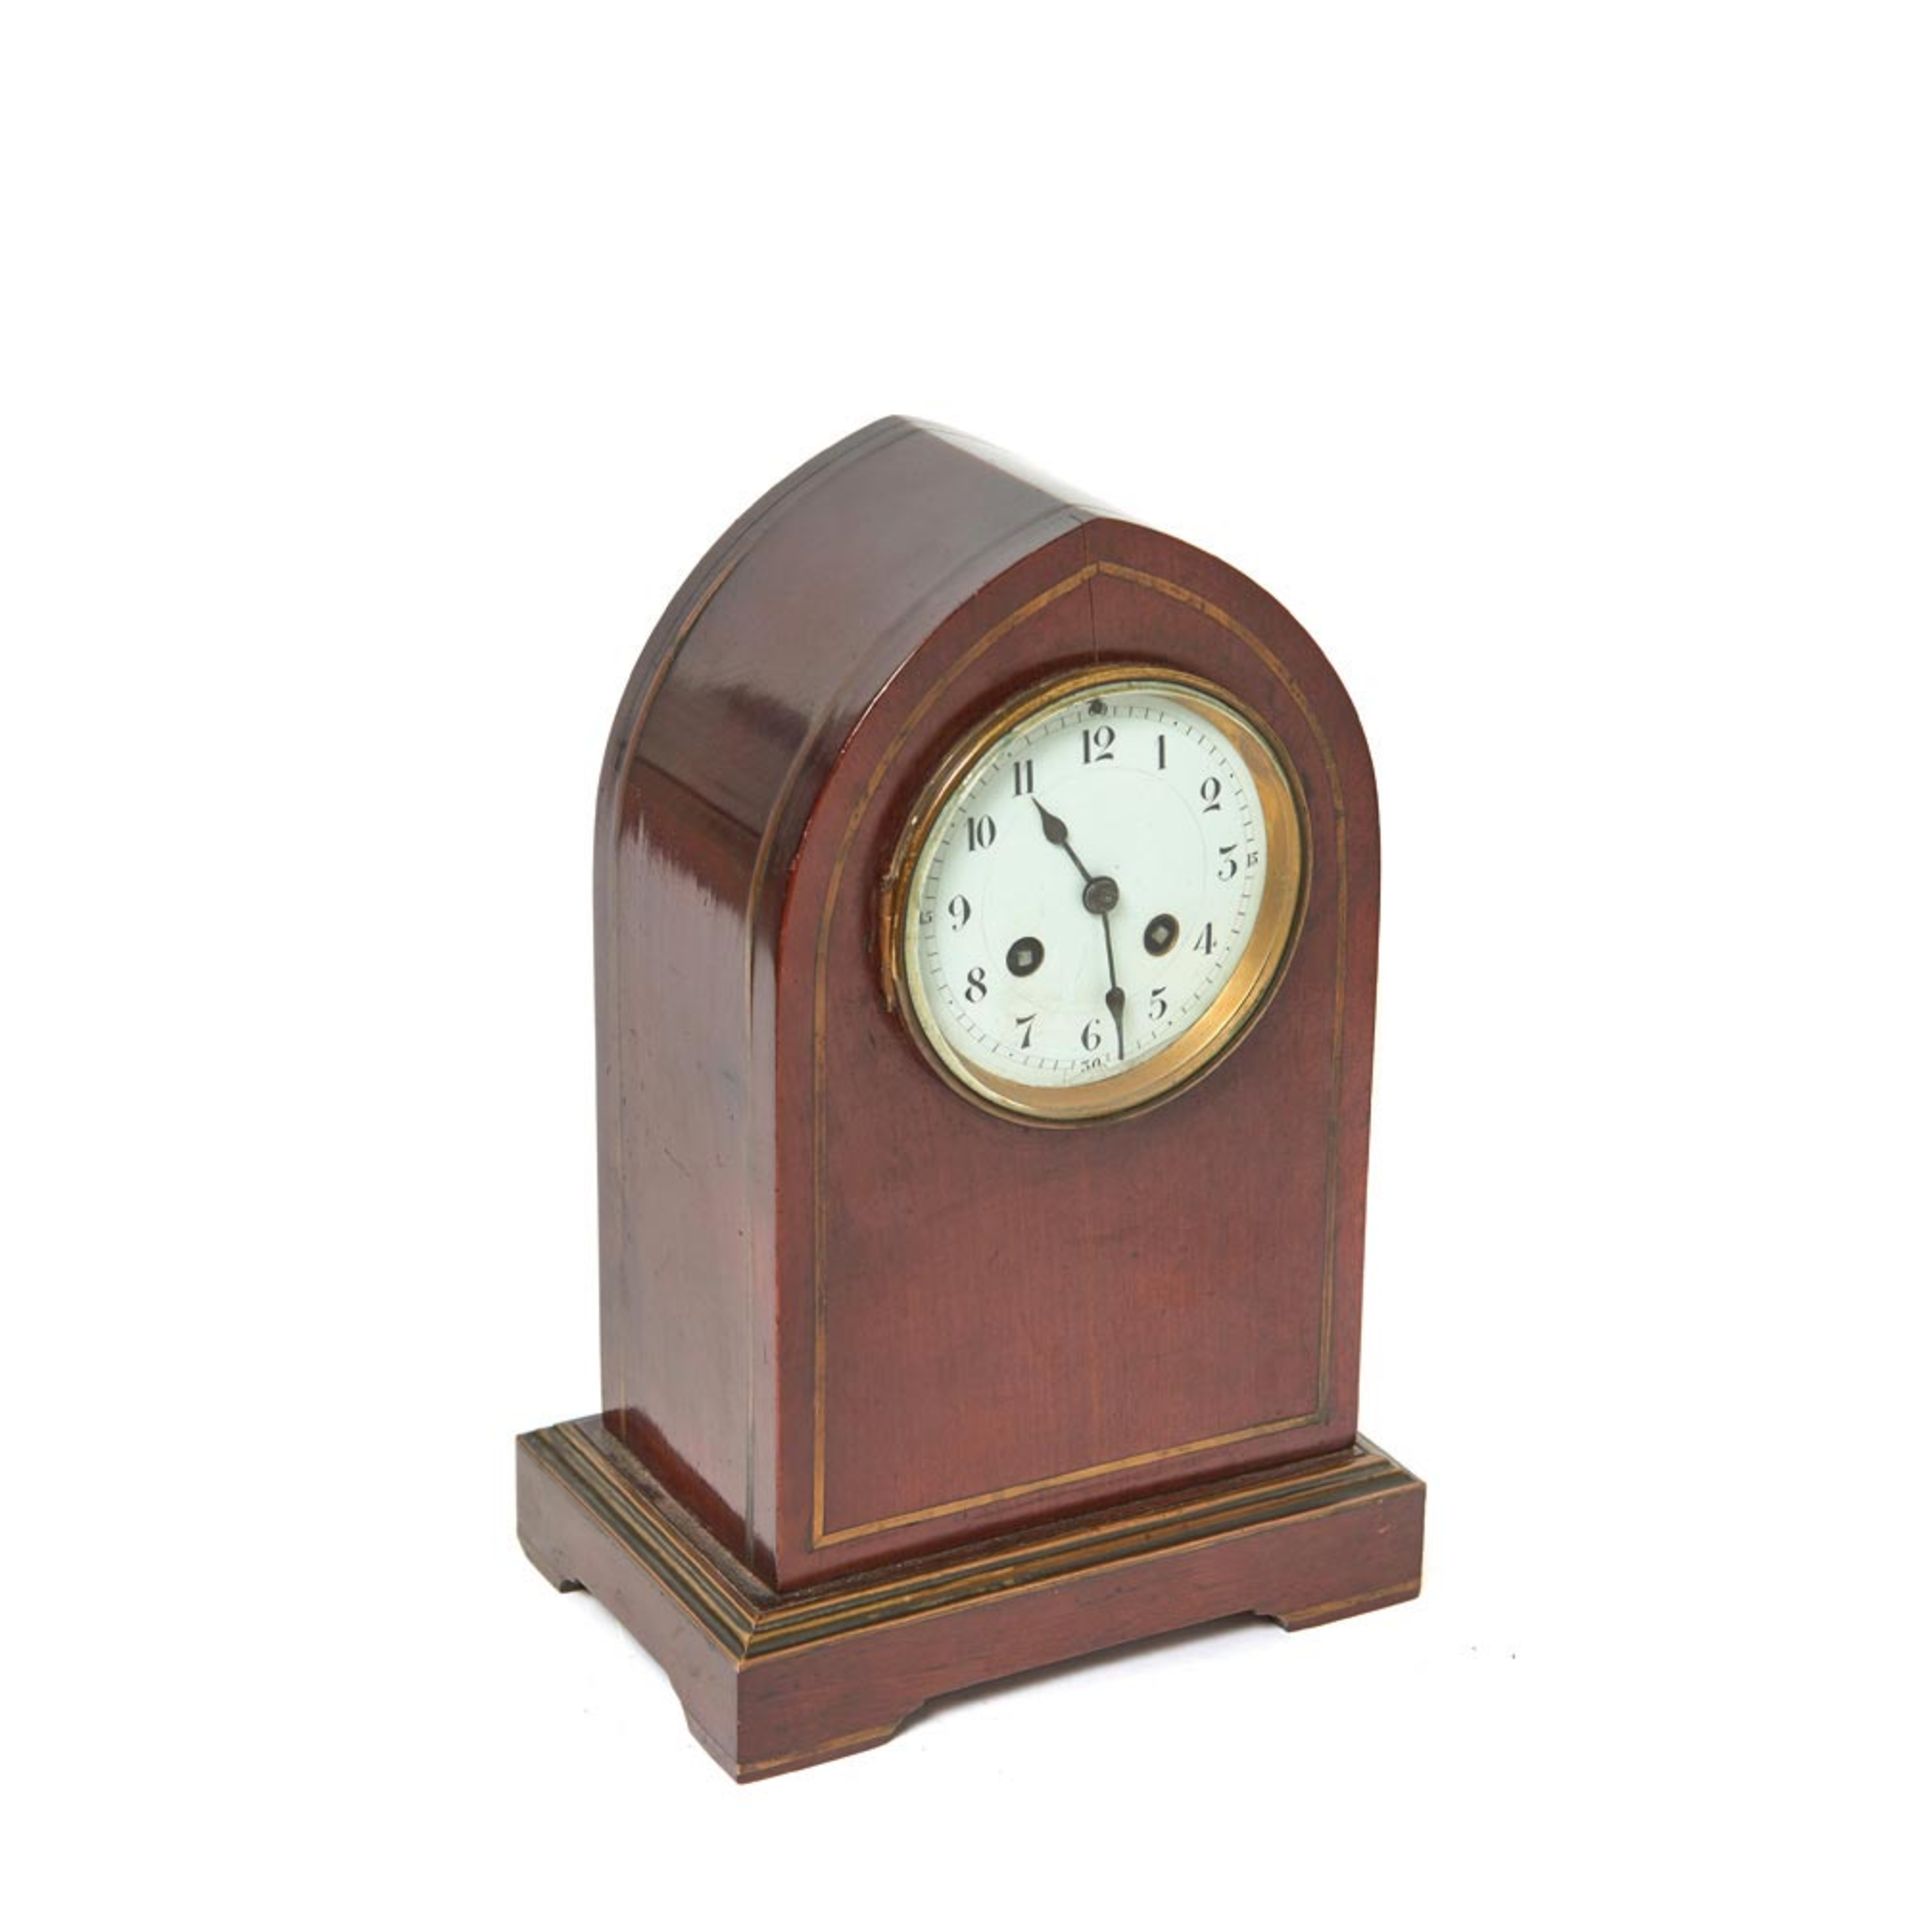 English mahogany wood table clock, early 20th century